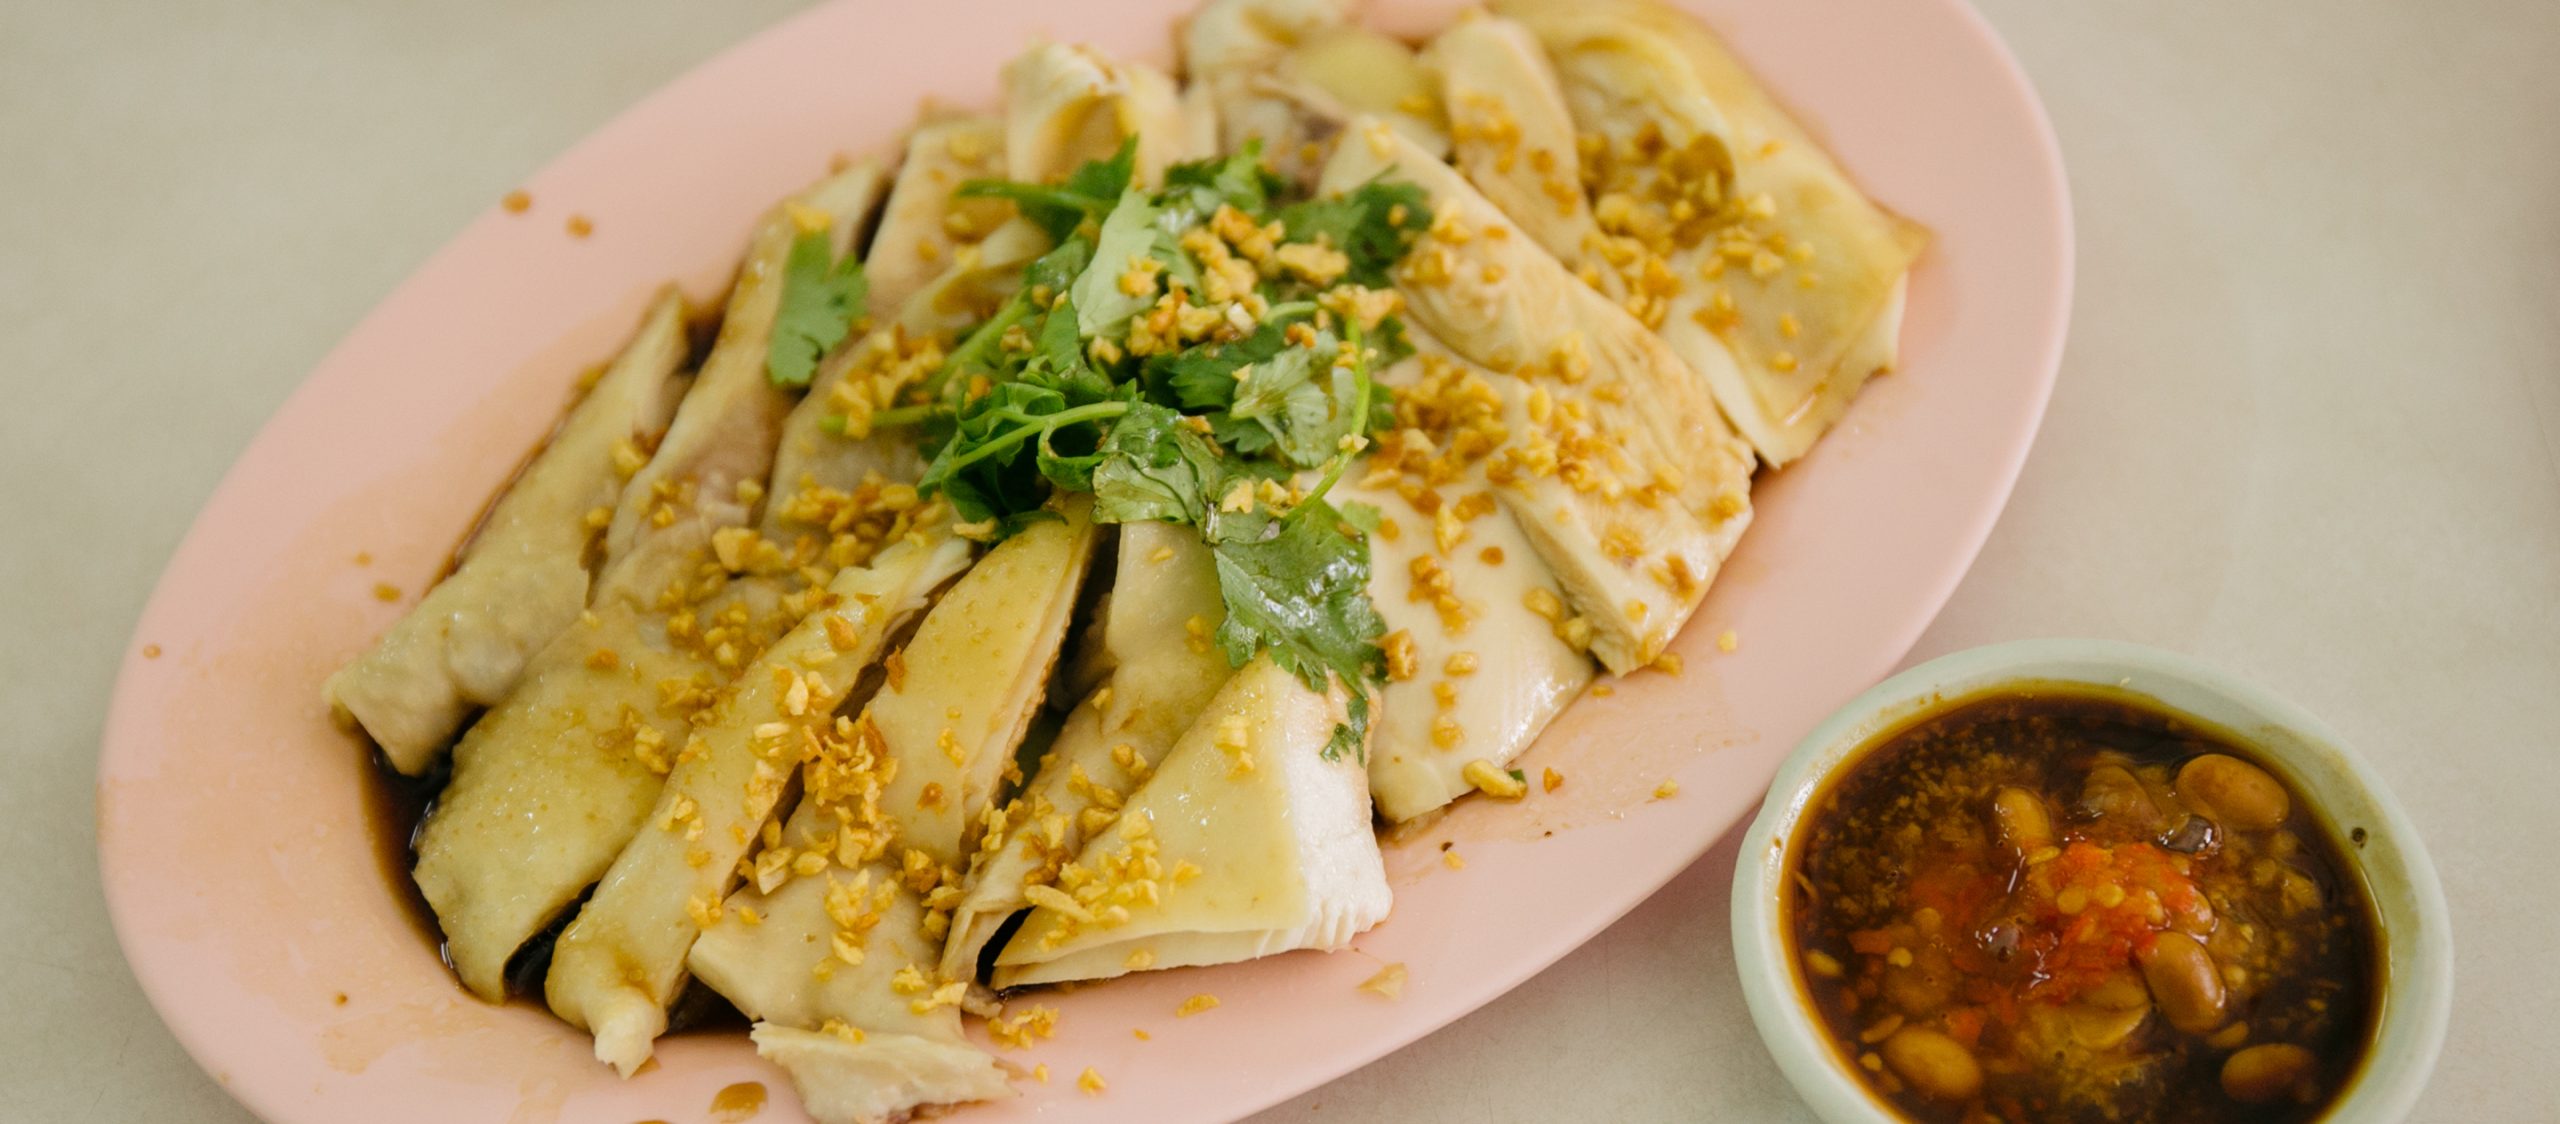 กินไก่เบตงนุ่มหนึบ หนังกรึบ ที่ ‘ยินดีโภชนา’ ร้านอาหารจีนปนไทยที่คนท้องถิ่นยกนิ้วให้ว่าแน่จริง